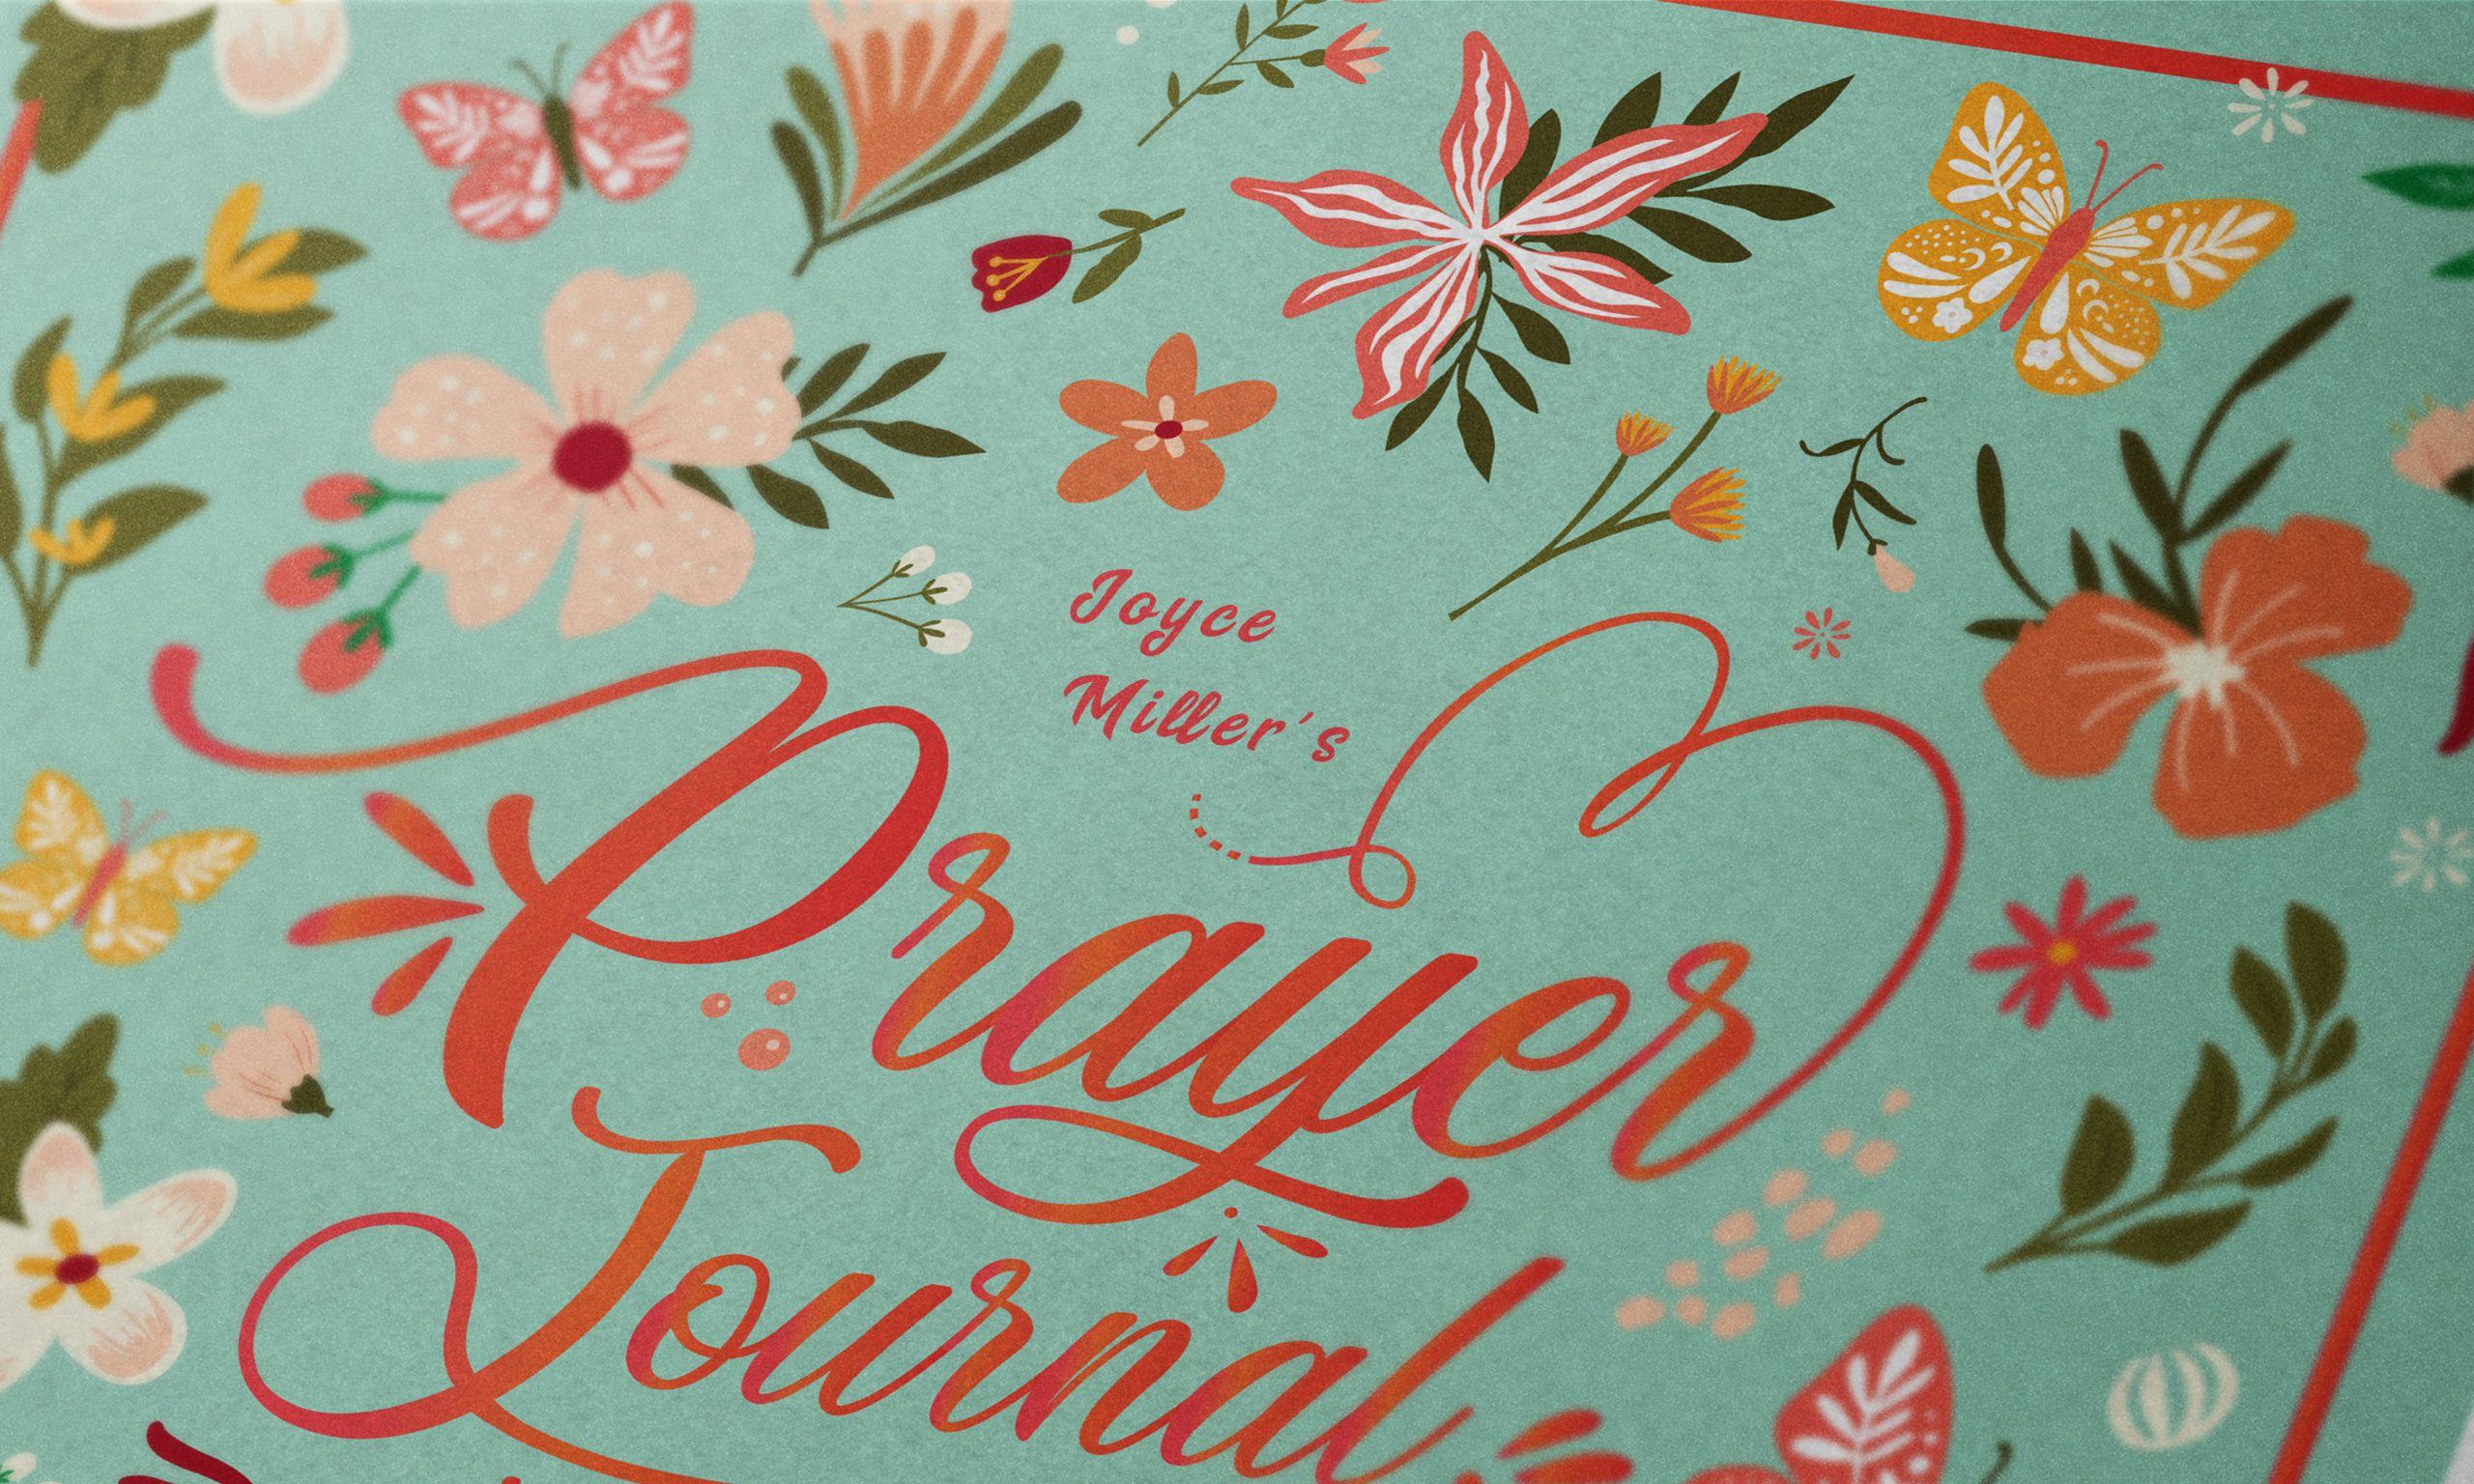 A Prayer Journal For Women 